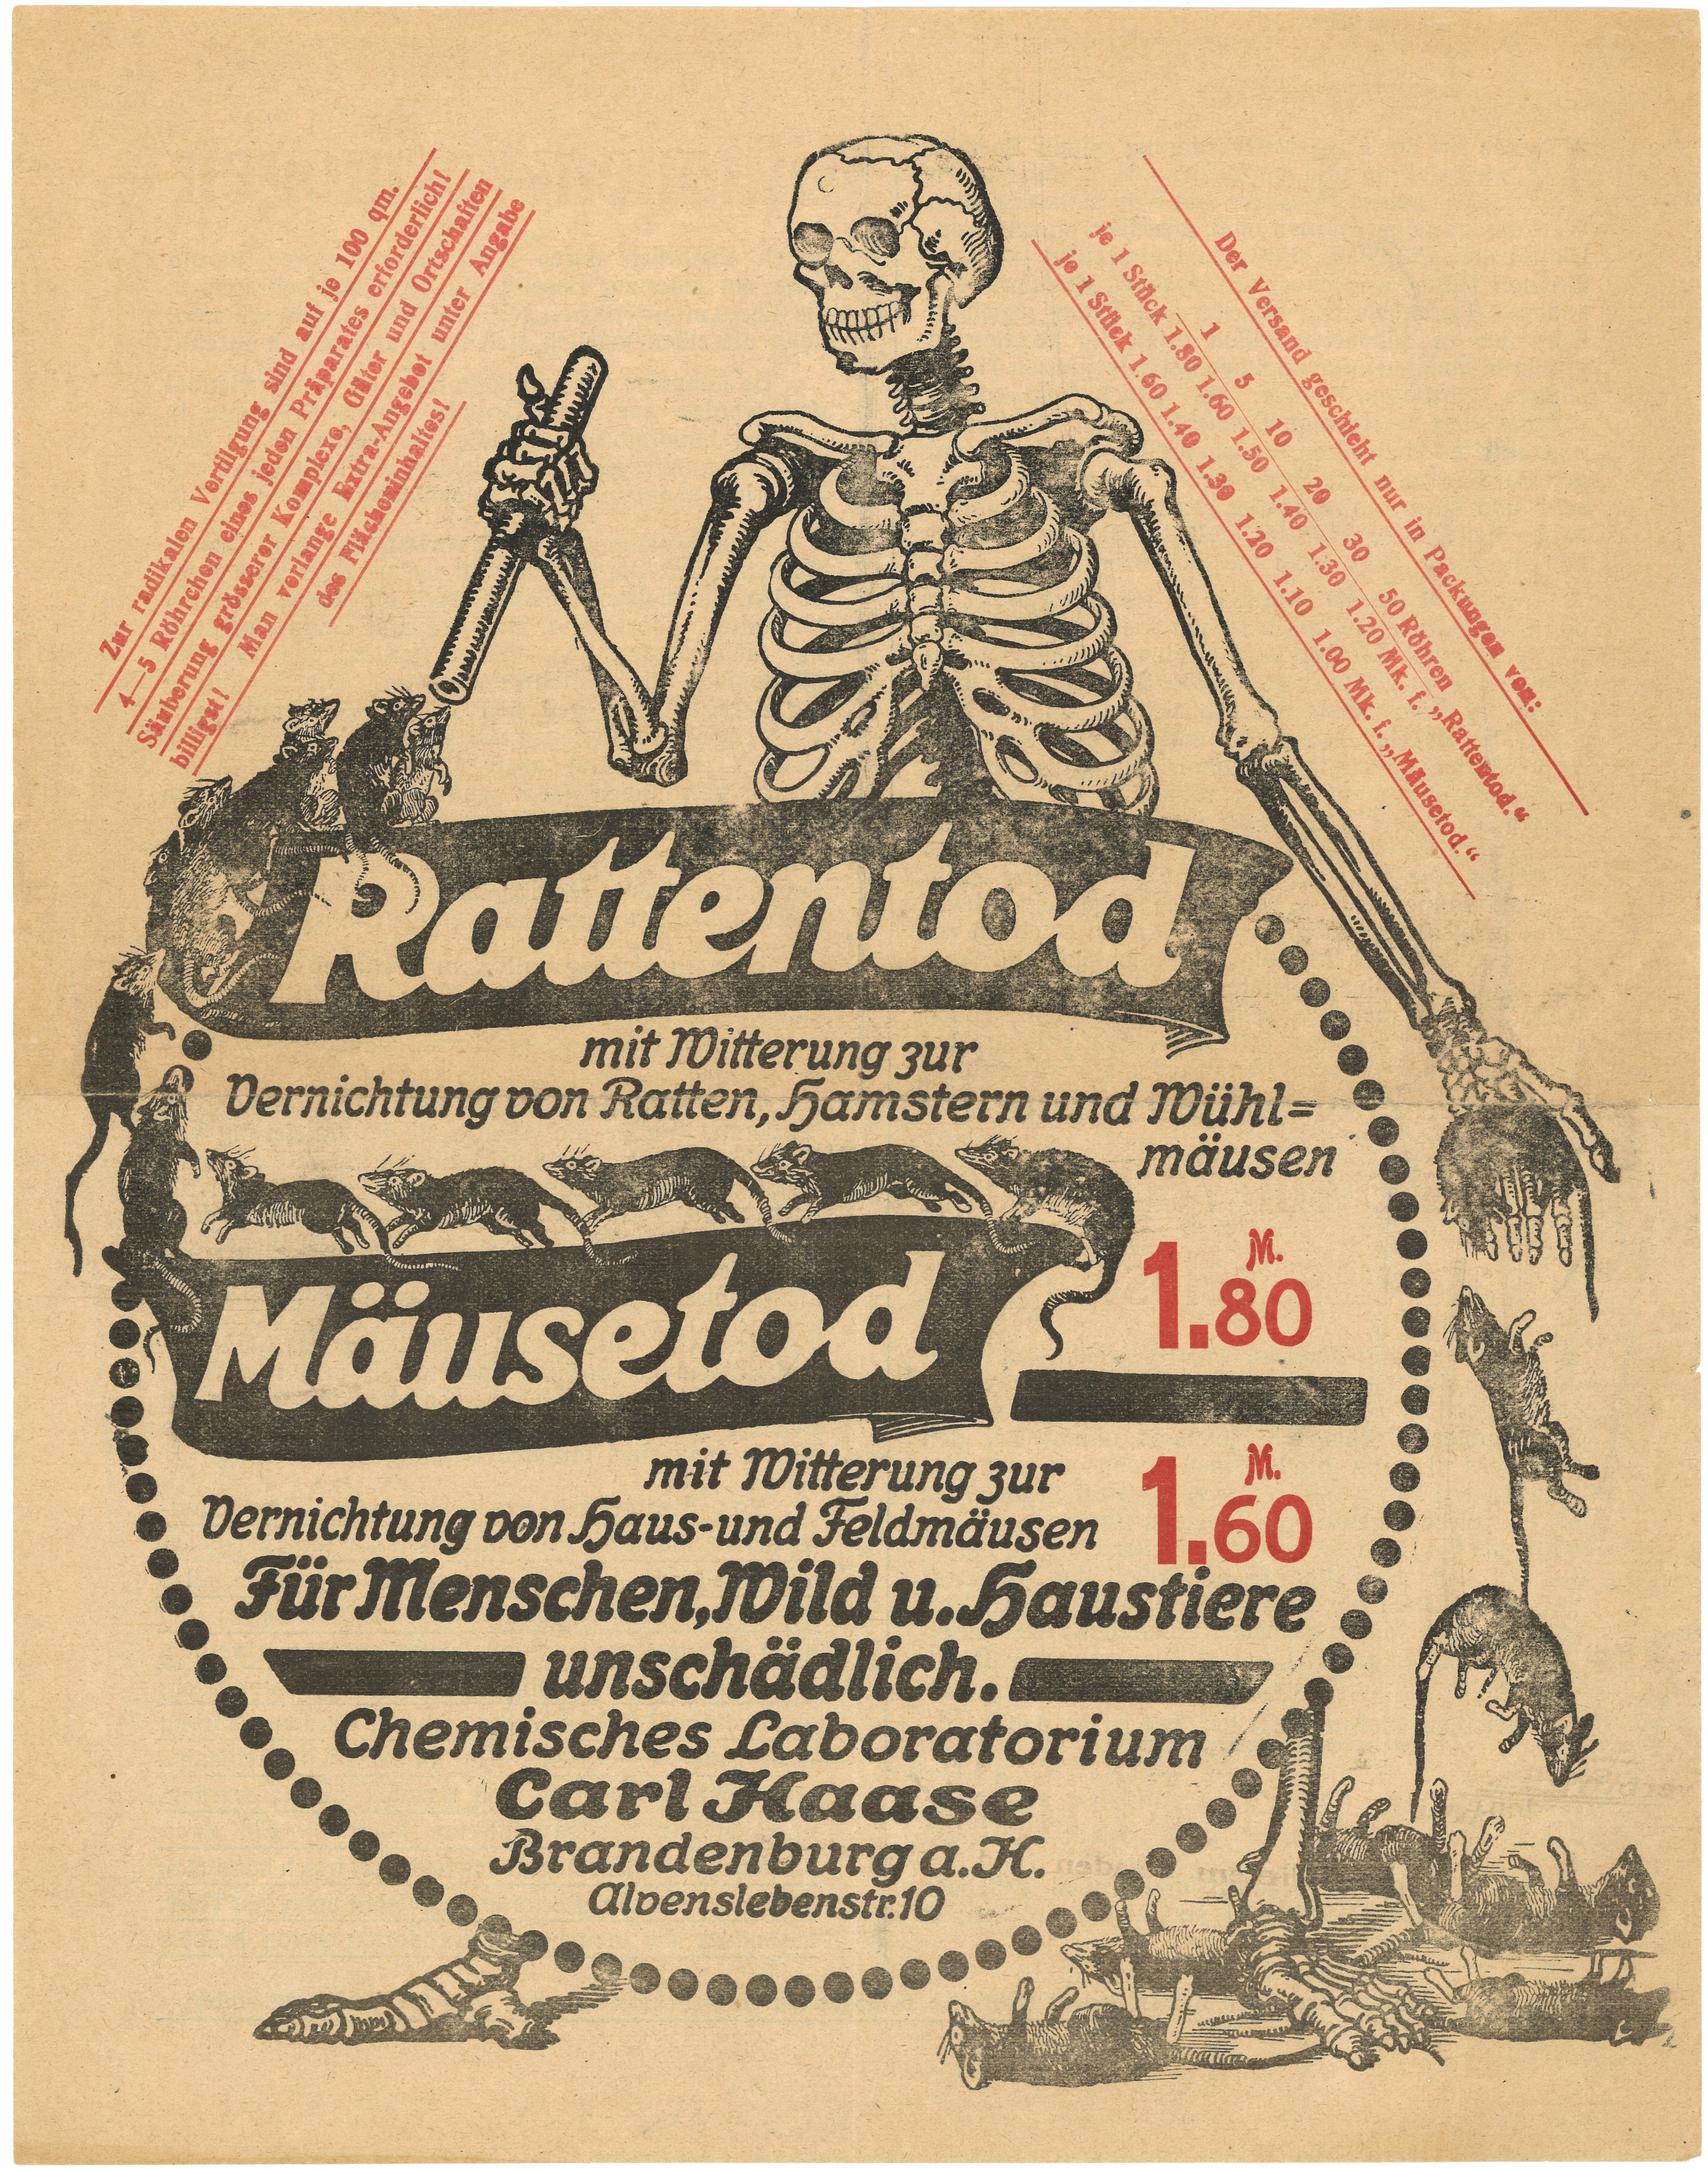 Werbung des Chemischen Laboratoriums Carl Haase in Brandenburg a.H. für Ratten- und Mäusetod (ca. 1916) (Landesgeschichtliche Vereinigung für die Mark Brandenburg e.V., Archiv CC BY)